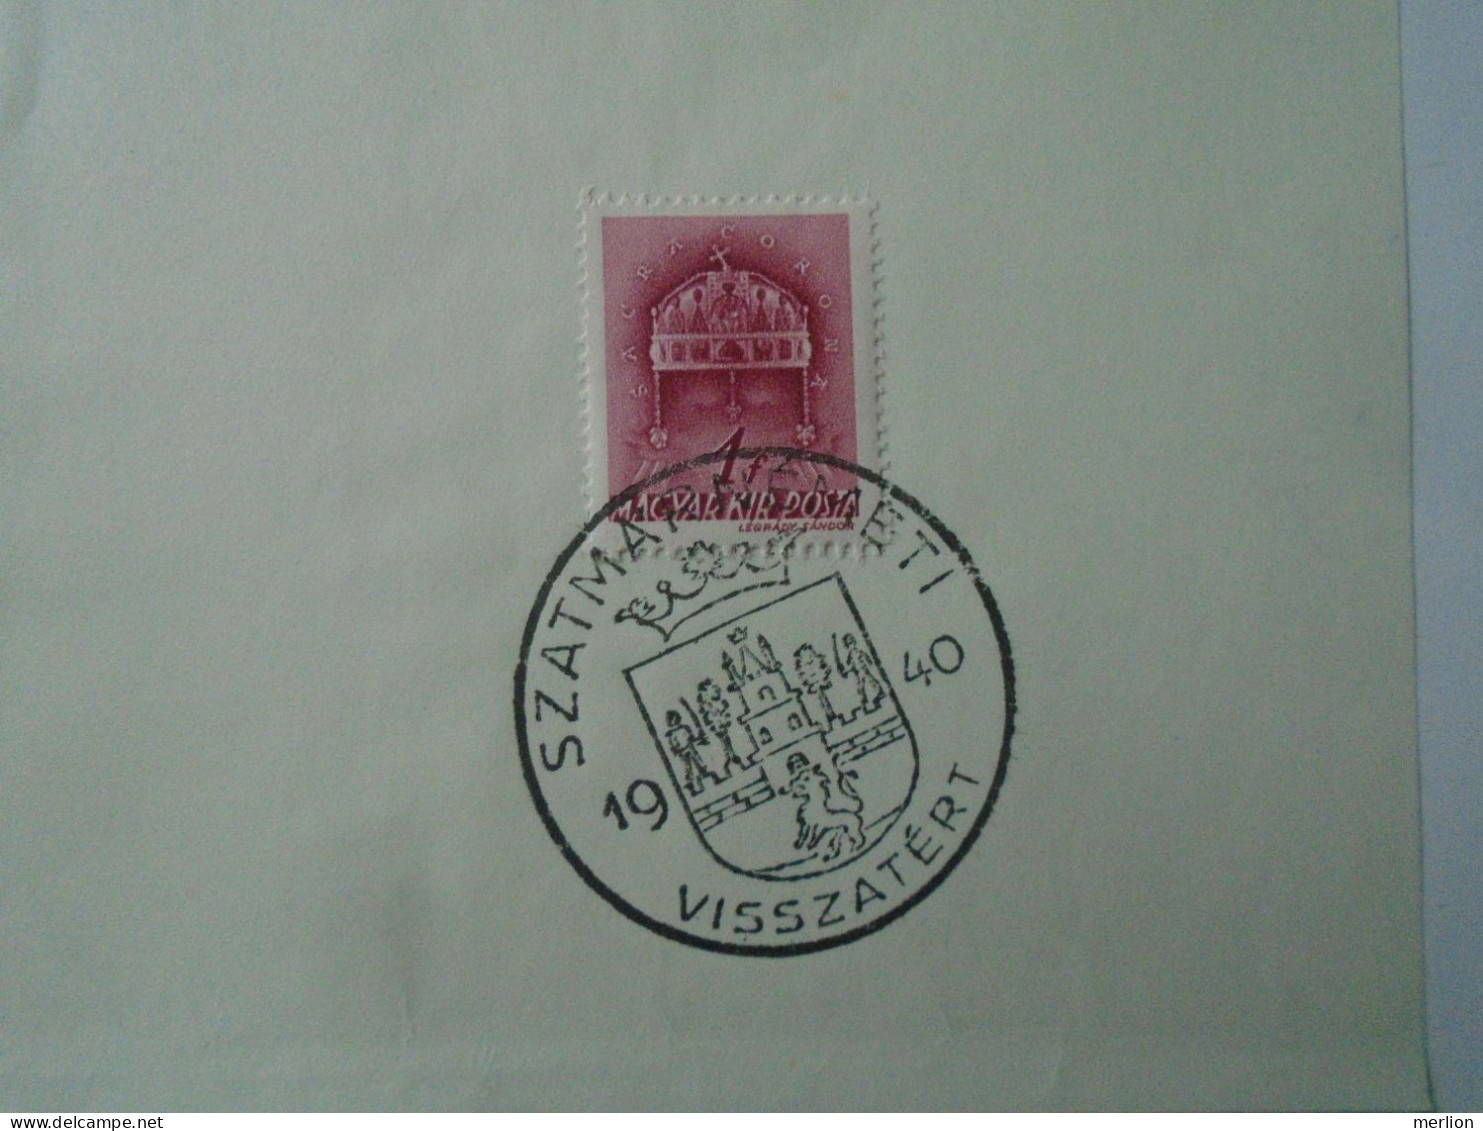 ZA451.58  Hungary -Lot of 9 different cities - visszatért -Commemorative postmark 1940 Nagybánya, Csíkszereda Nagykároly